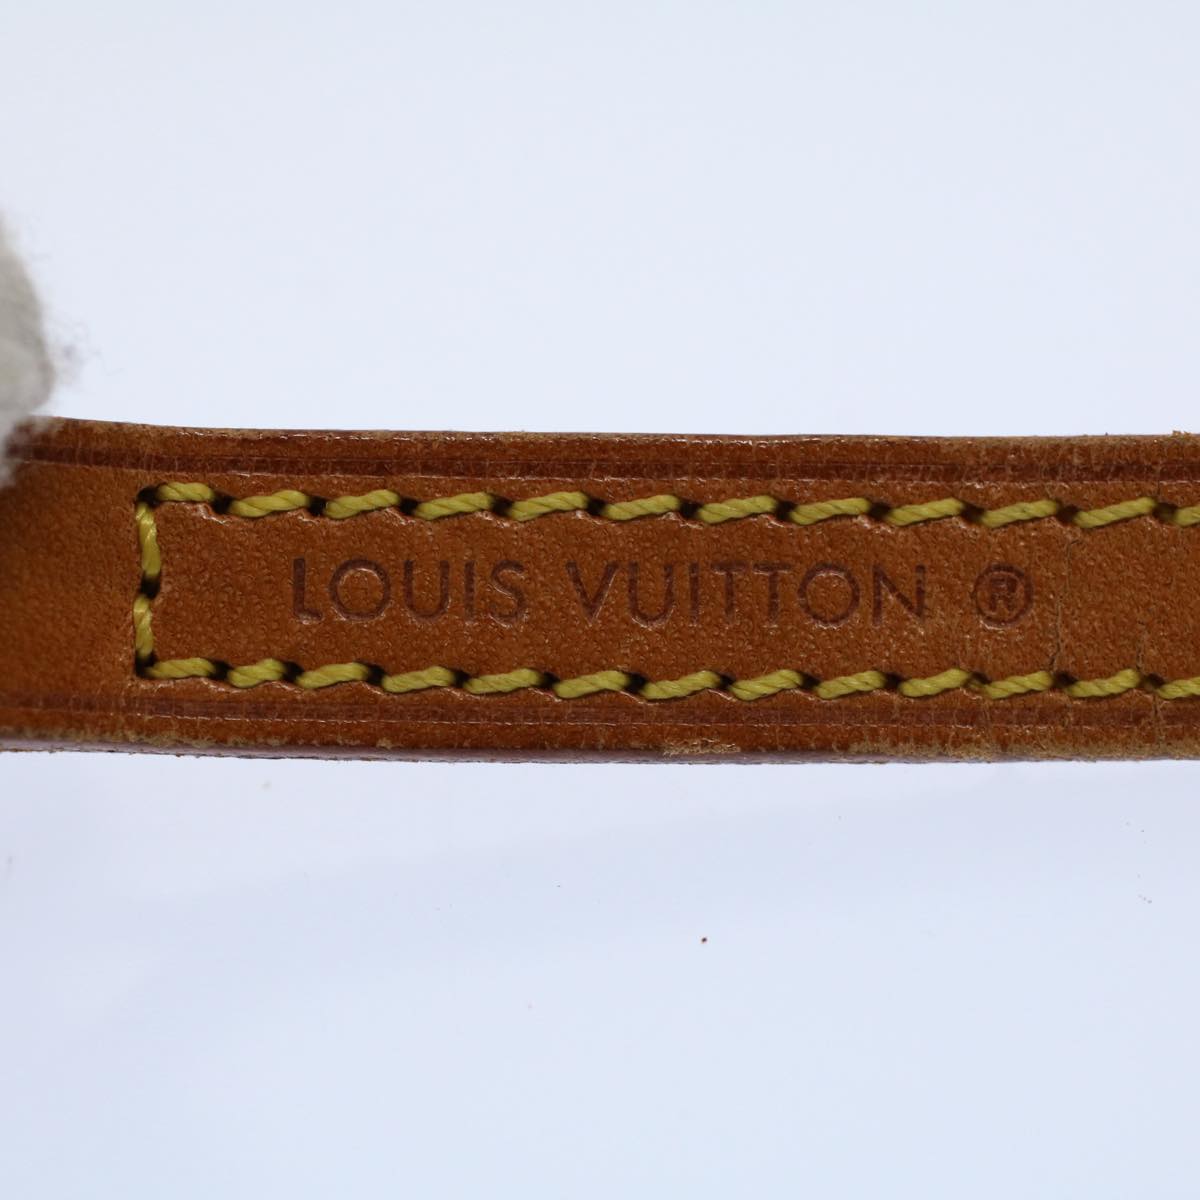 LOUIS VUITTON Shoulder Strap Leather 45.3"" Beige LV Auth 59873